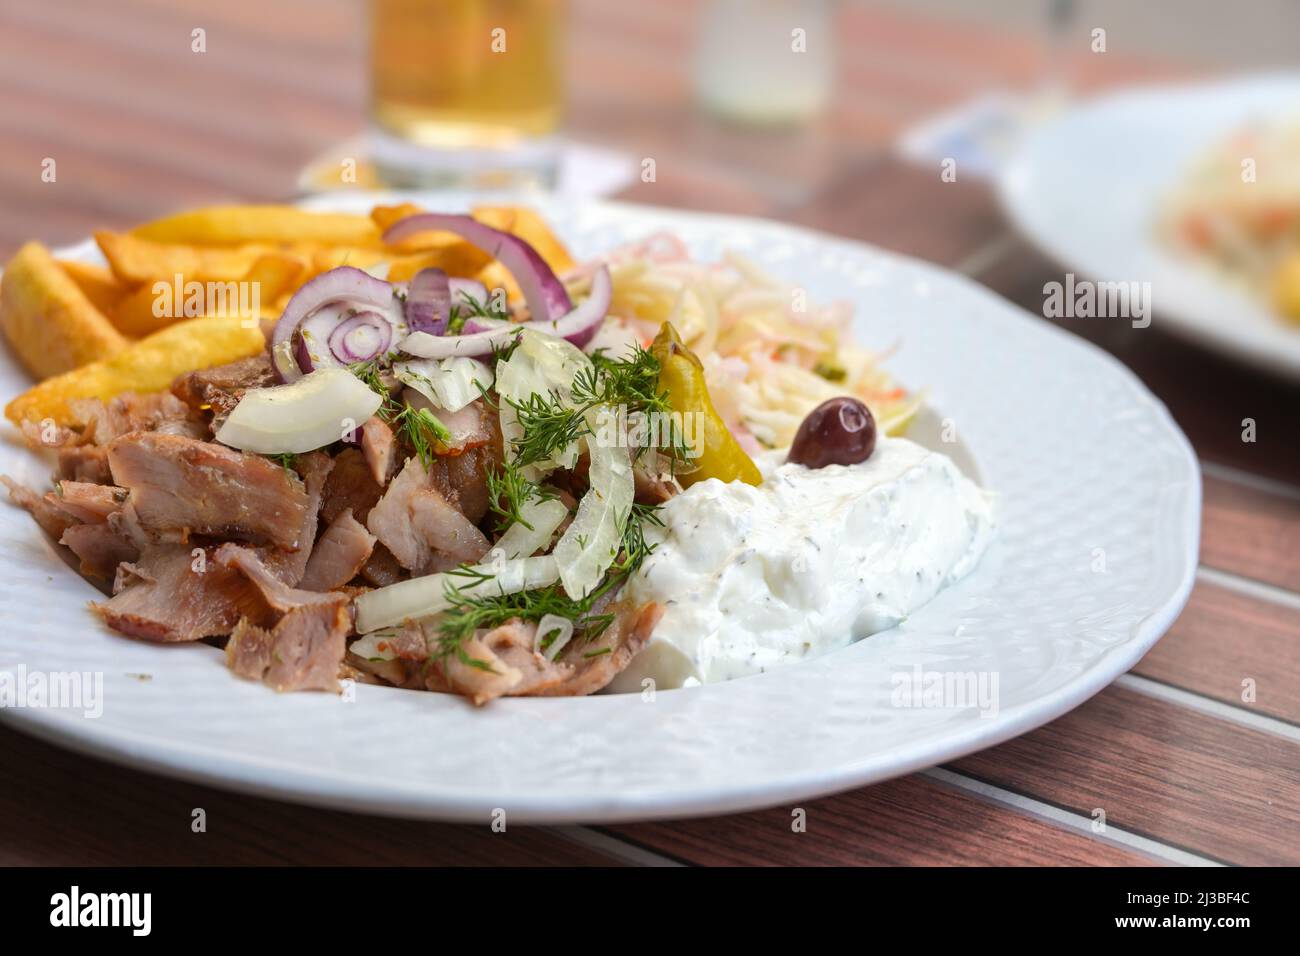 Griechisches Gyros-Gericht aus gebratenem, in Scheiben geschnittenem Fleisch mit Pommes frites, Zwiebeln, Krautsalat und Tsatziki auf einem weißen Teller in einem Restaurant im Freien, Nahaufnahme, s. Stockfoto